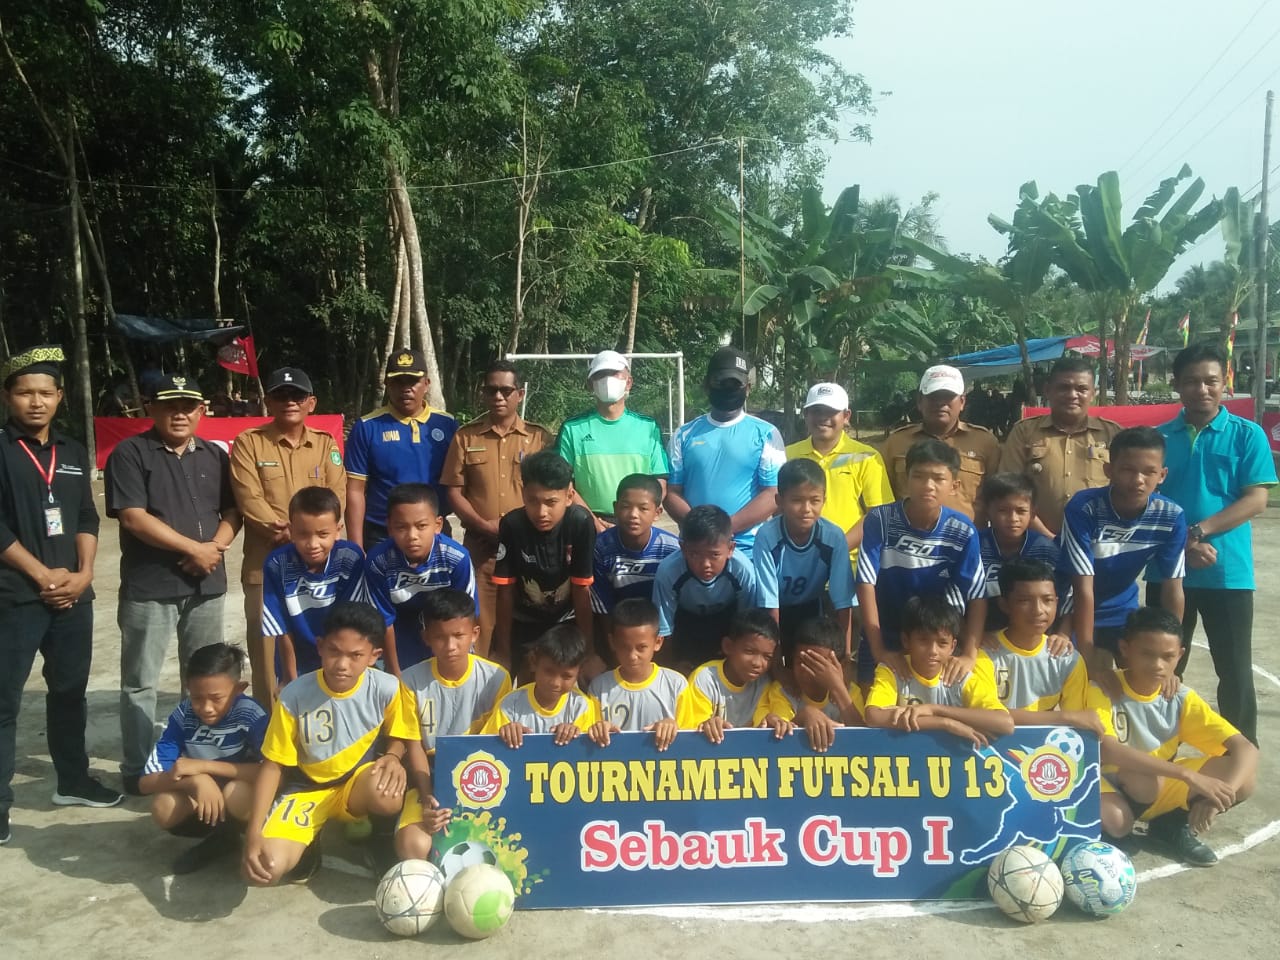 Kegiatan Turnamen Futsal U 13 cup 1 di Desa Sebauk Kecamatan Bengkalis